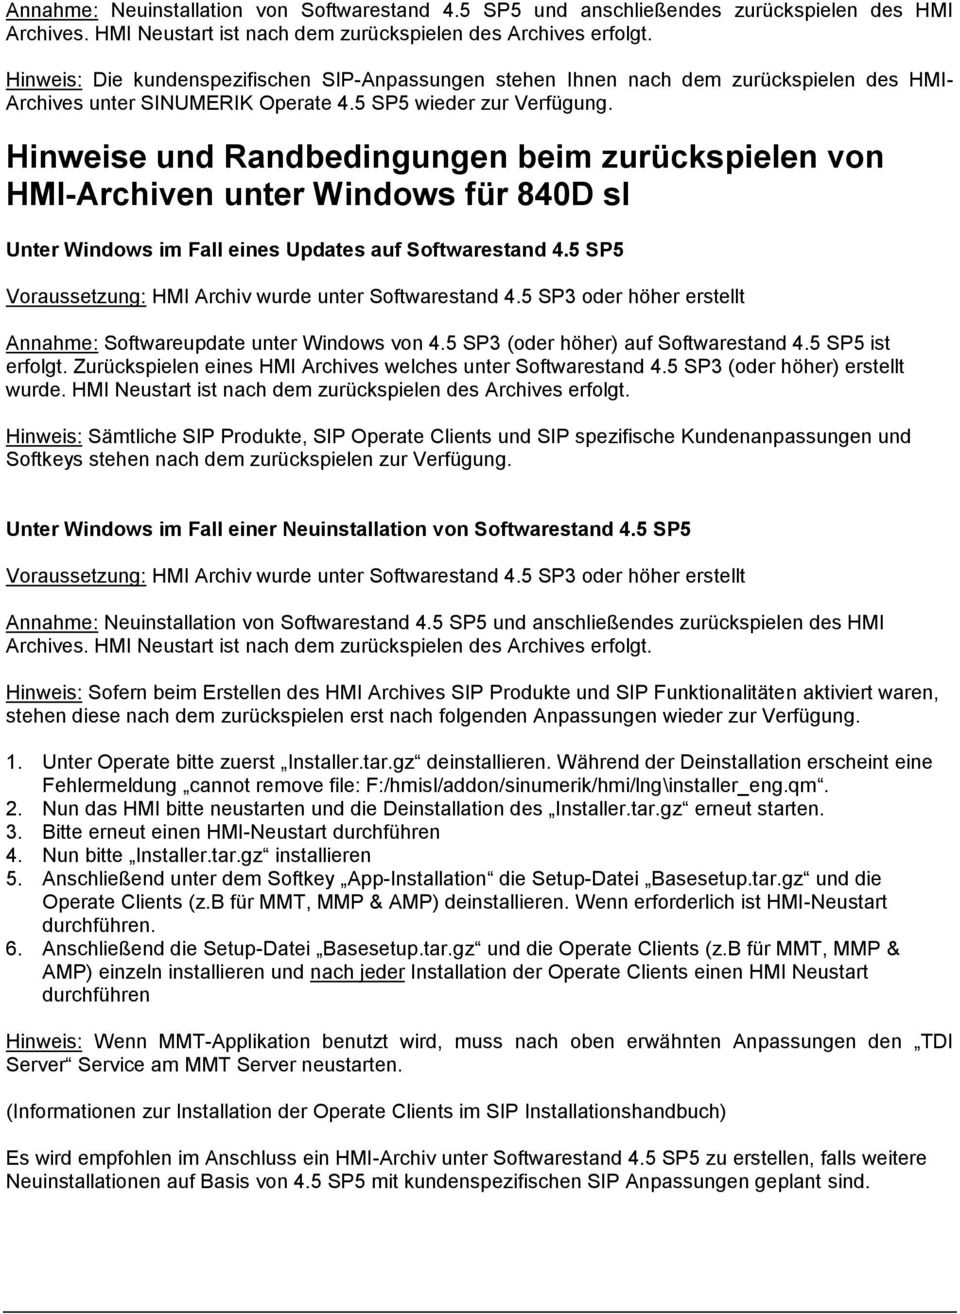 Hinweise und Randbedingungen beim zurückspielen von HMI-Archiven unter Windows für 840D sl Unter Windows im Fall eines Updates auf Softwarestand 4.5 SP5 Annahme: Softwareupdate unter Windows von 4.